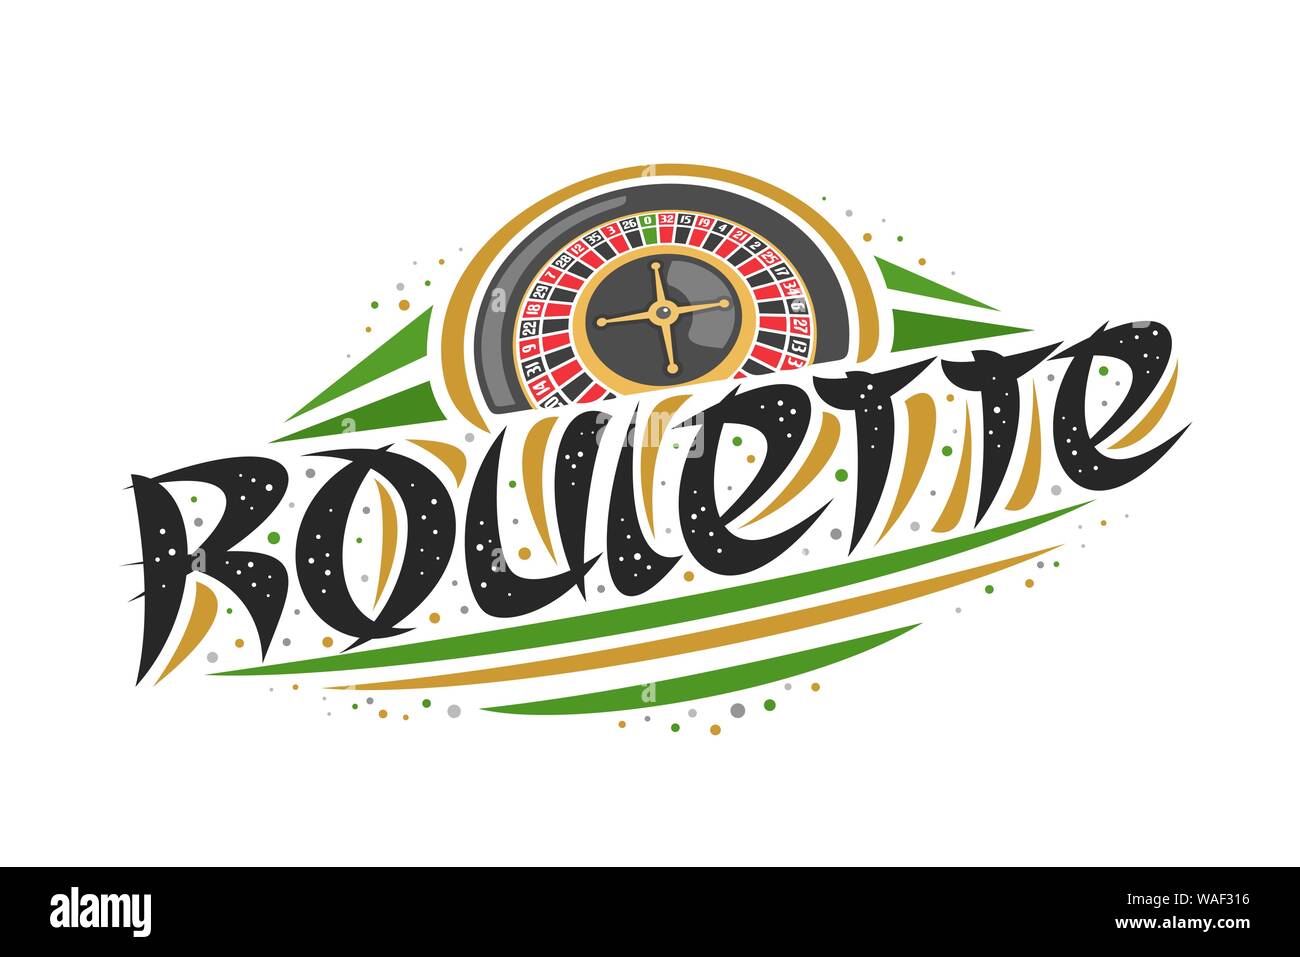 Vektor logo für Roulette, kreative Darstellung der Europäischen Roulette Rad, original dekorative Pinsel Schrift für Wort Roulette, vereinfachende Zusammenfassung Stock Vektor